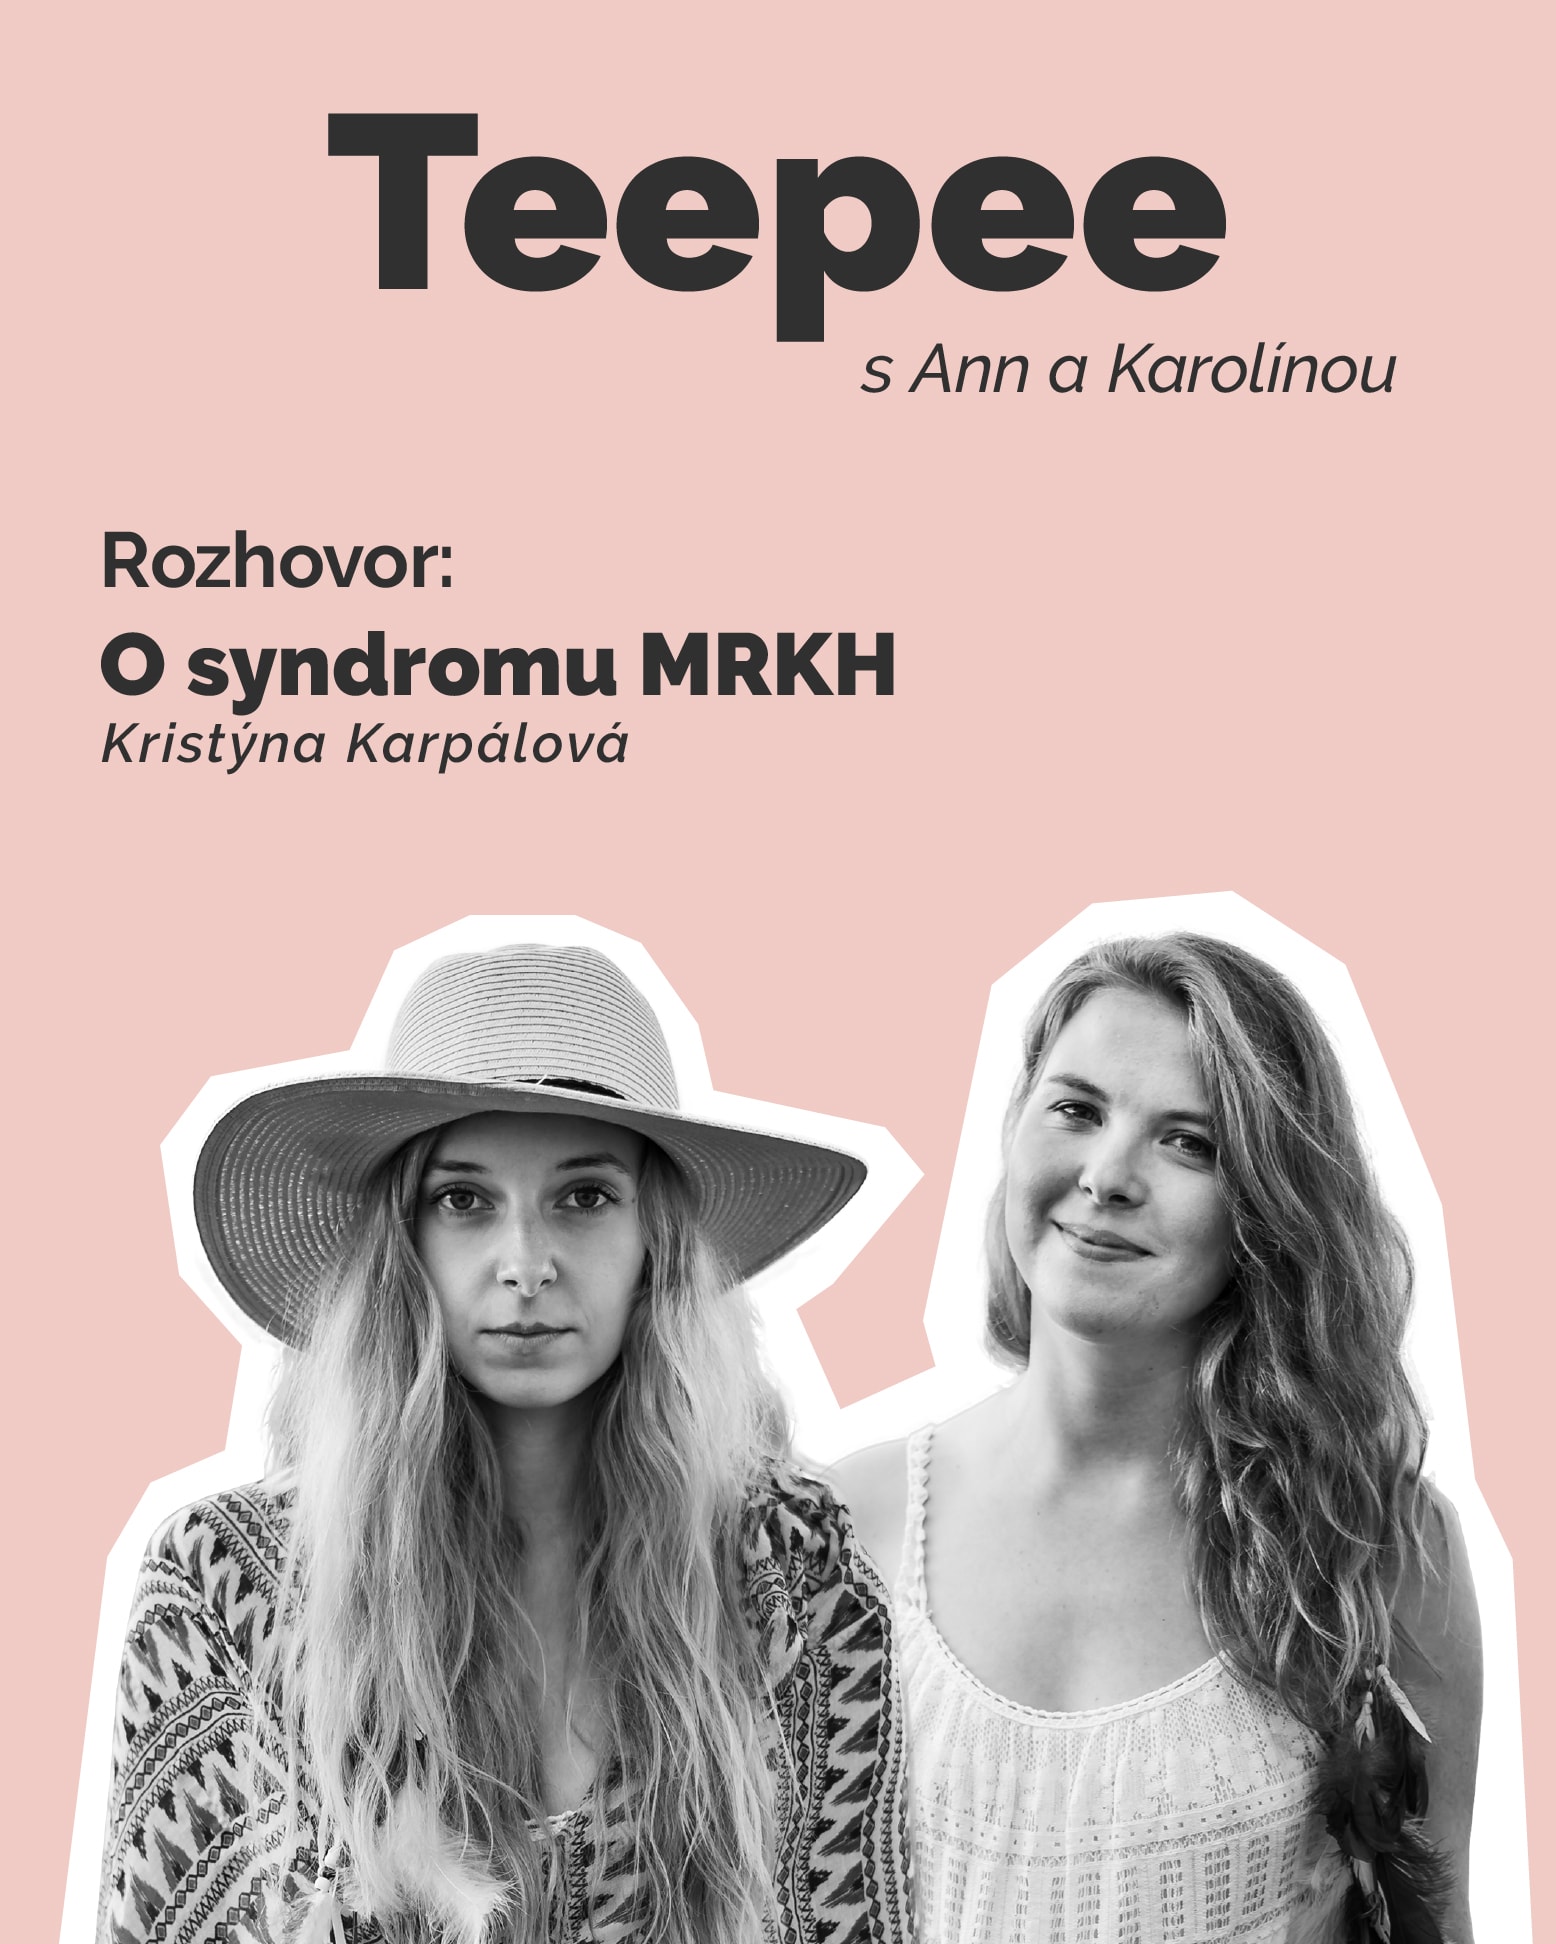 Video: #1Teepee: O syndromu MRKH s Kristýnou Karpálovou